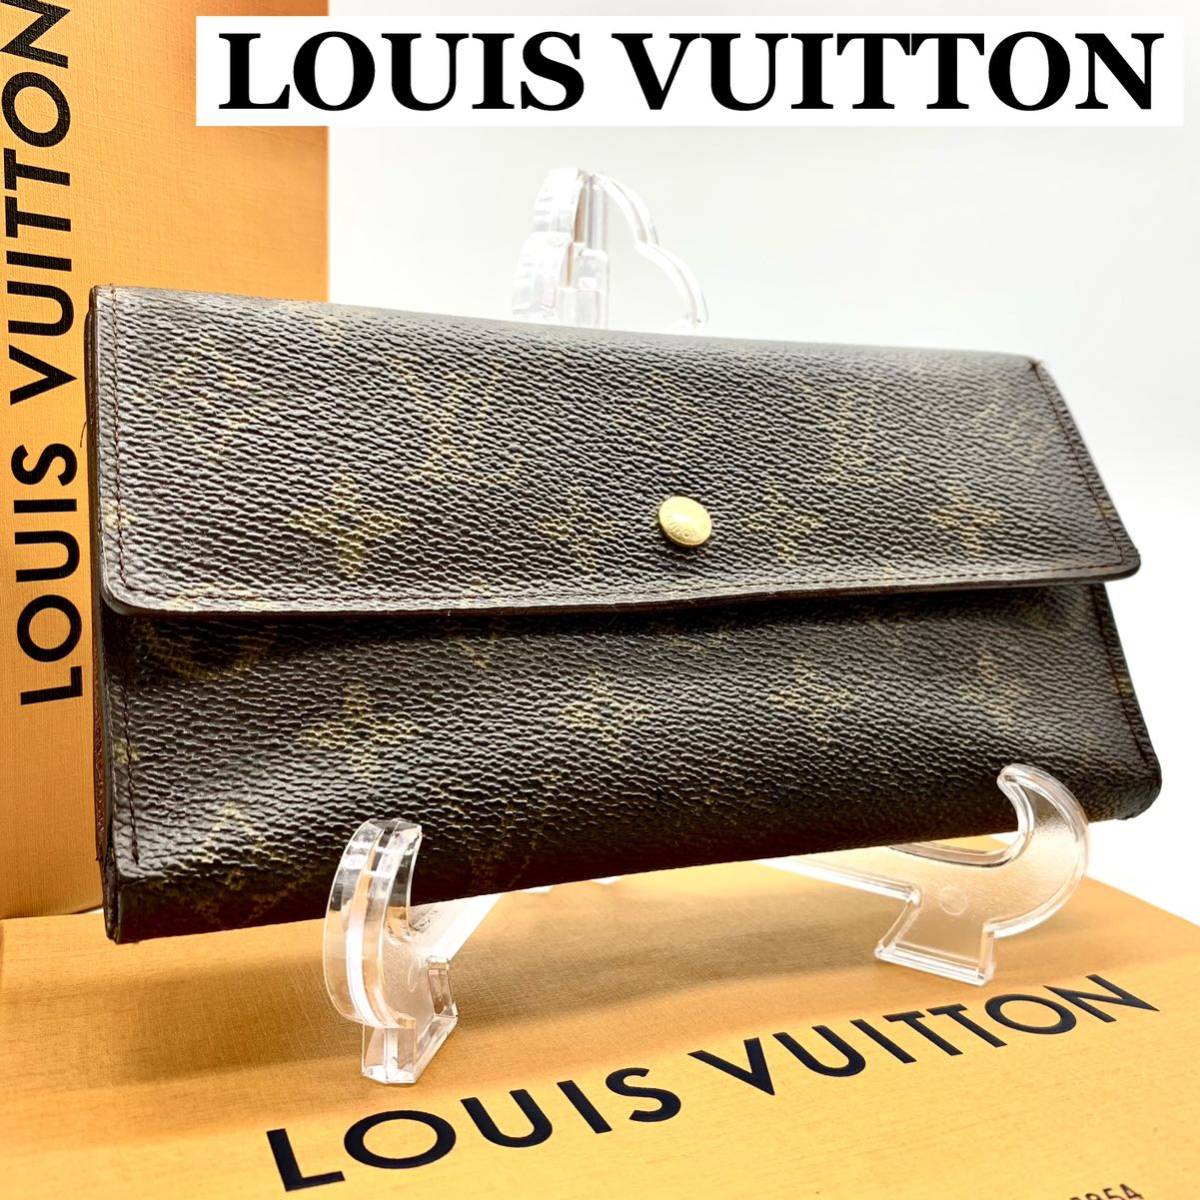 Louis Vuitton - Sarah - Wallet - Catawiki